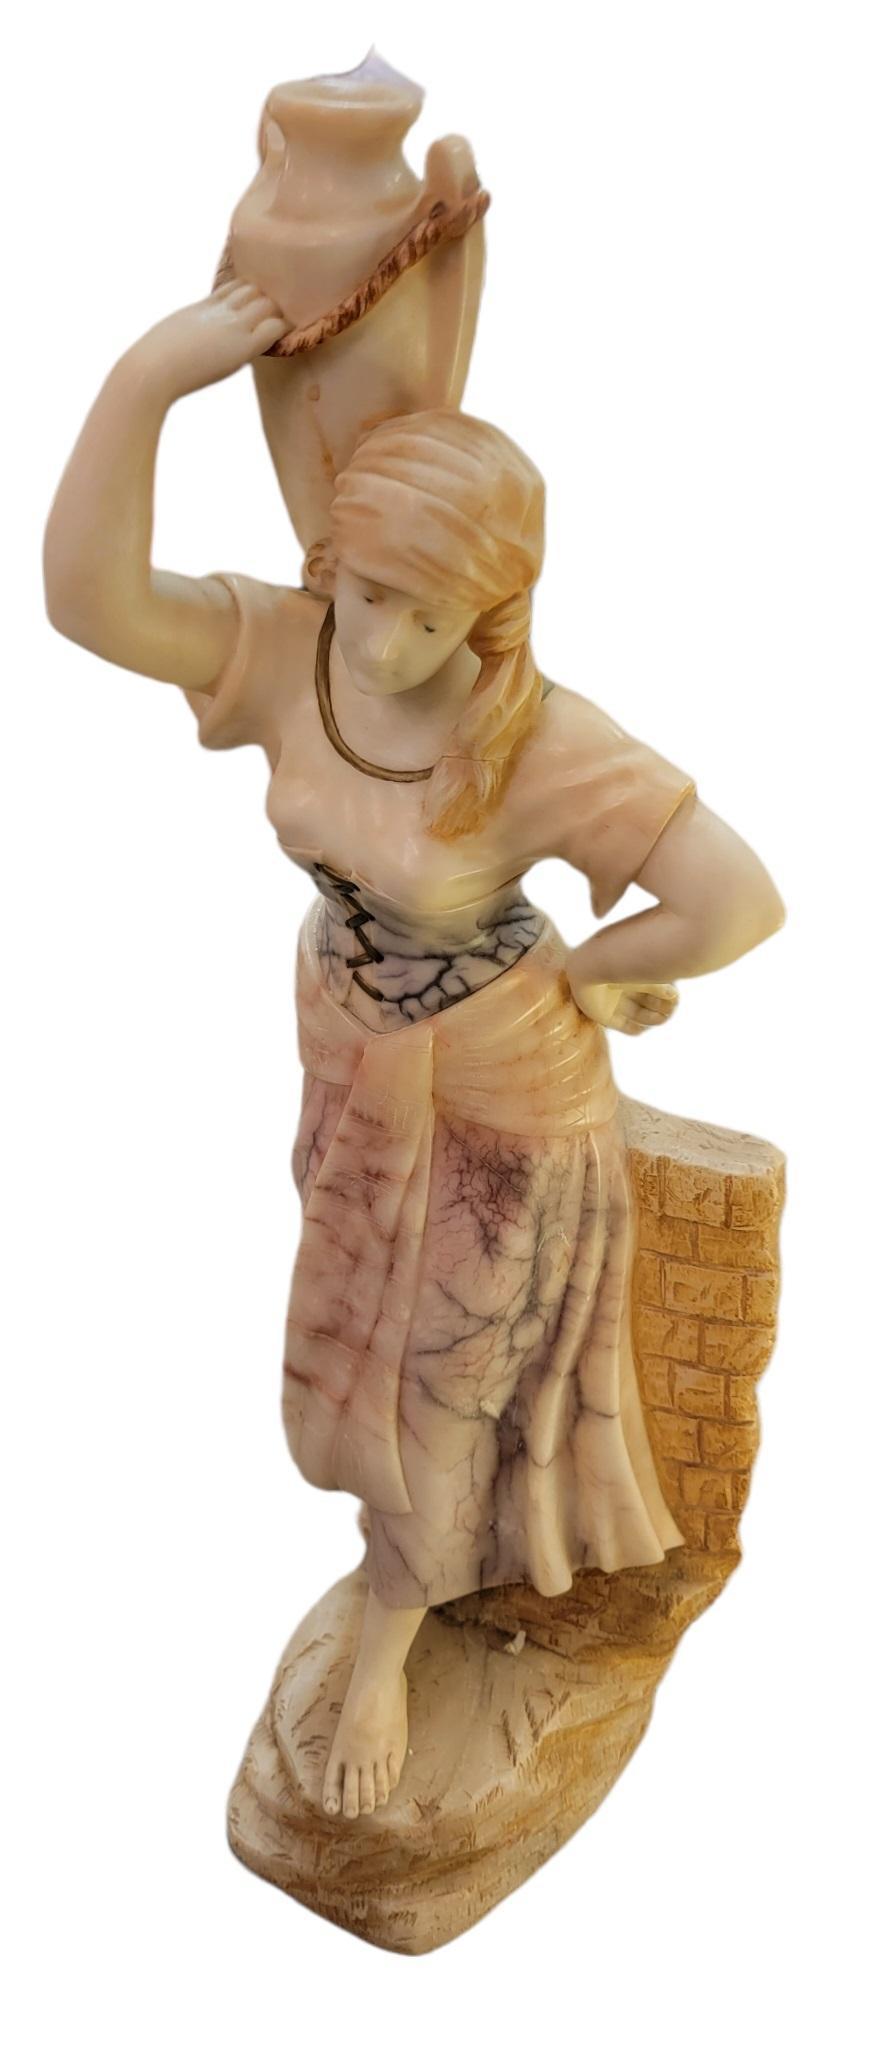 Statue de femme en albâtre sculpté à la main, en marbre, tenant un vase/canister, pieds nus et vêtue d'un costume de travail traditionnel. Base lourde. Article lourd.